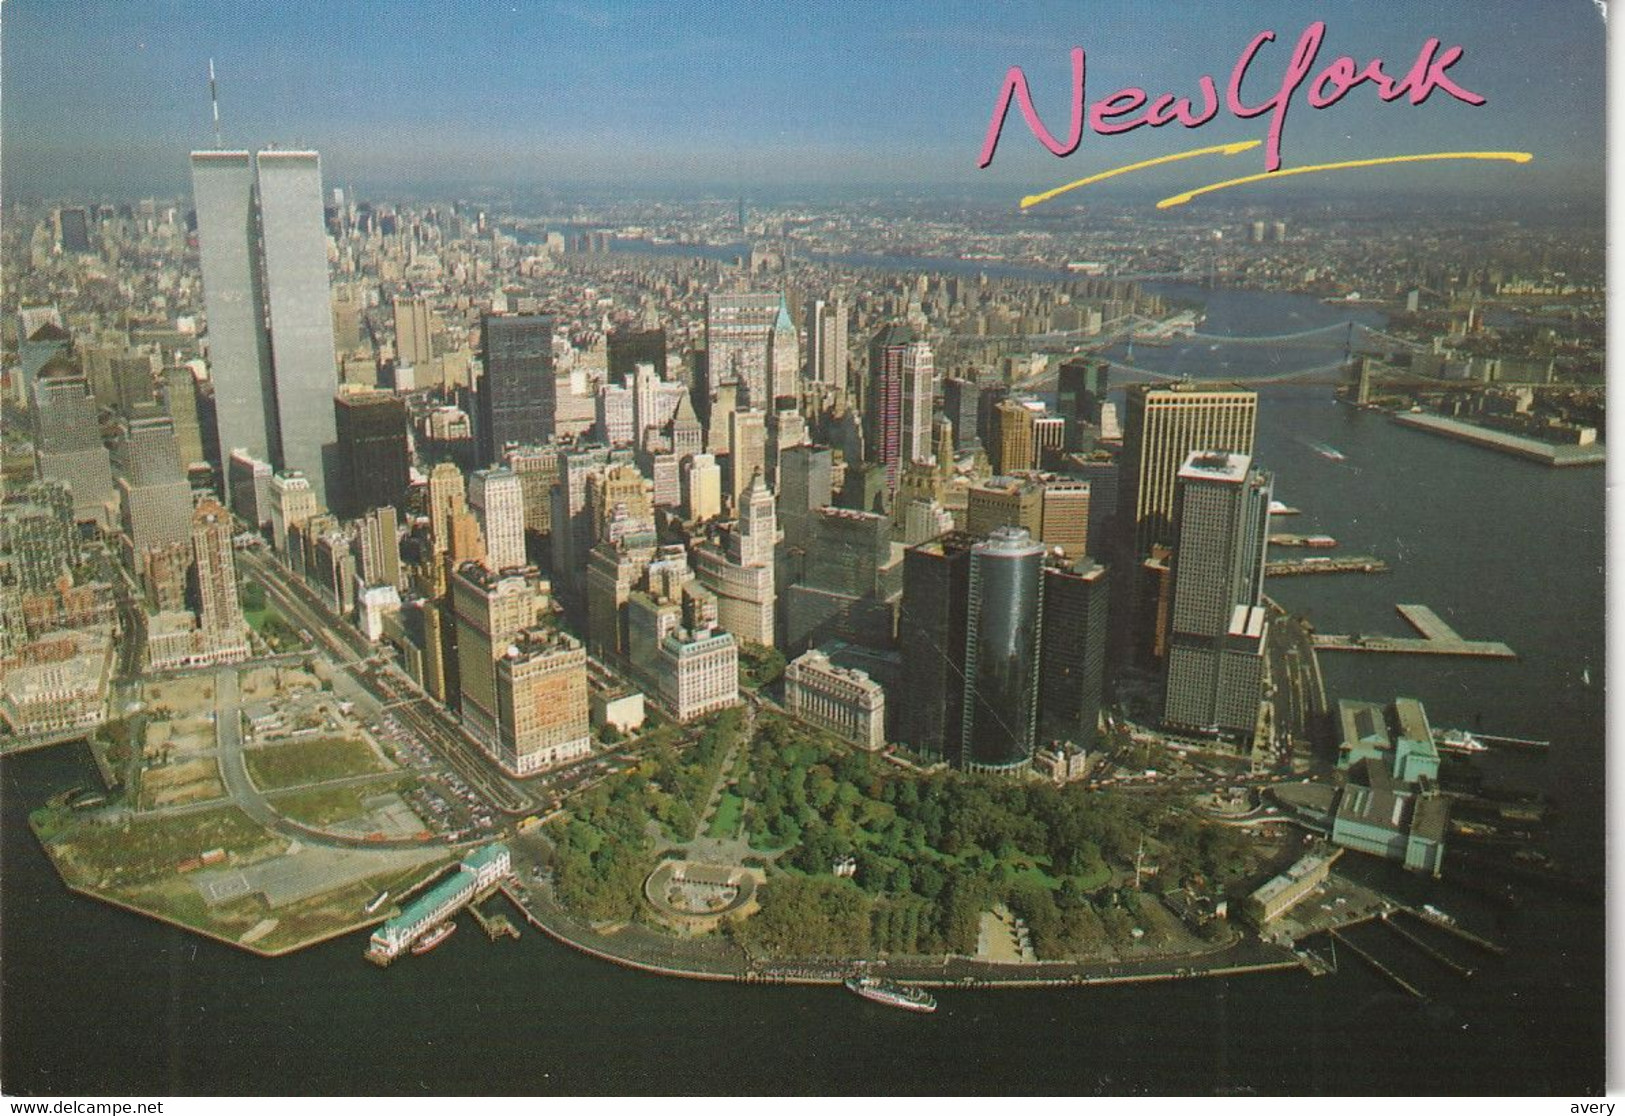 New York City Manhattan Panoramic View - Panoramic Views